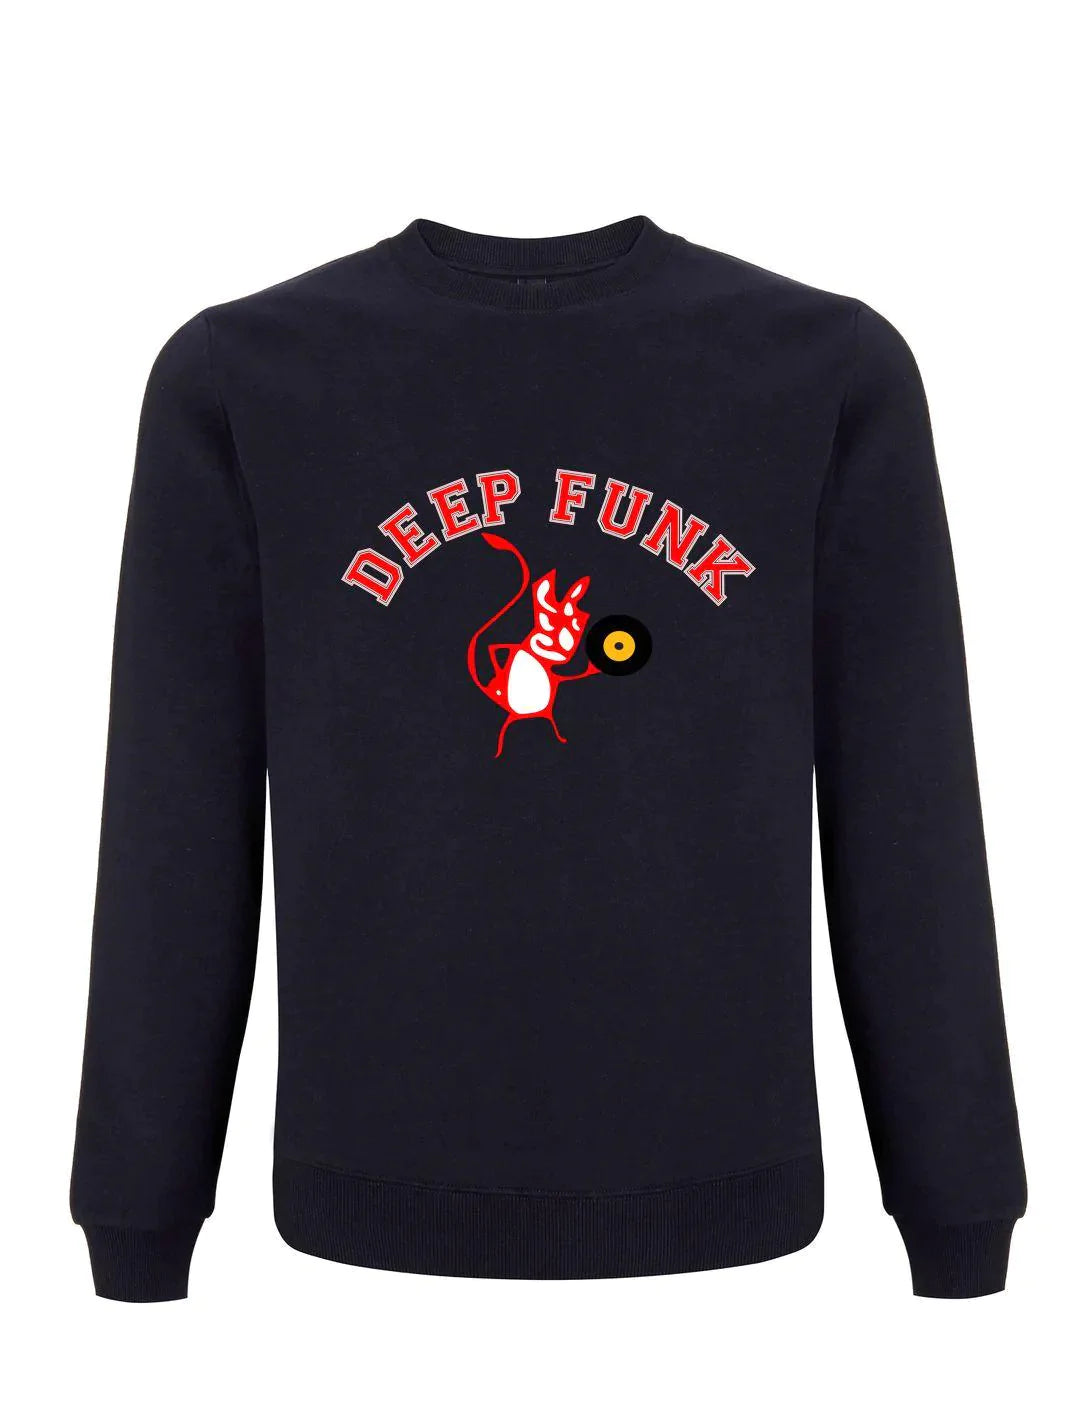 DEEP FUNK DEVIL: Sweatshirt (4 Colours) - Official Keb Darge - SOUND IS COLOUR